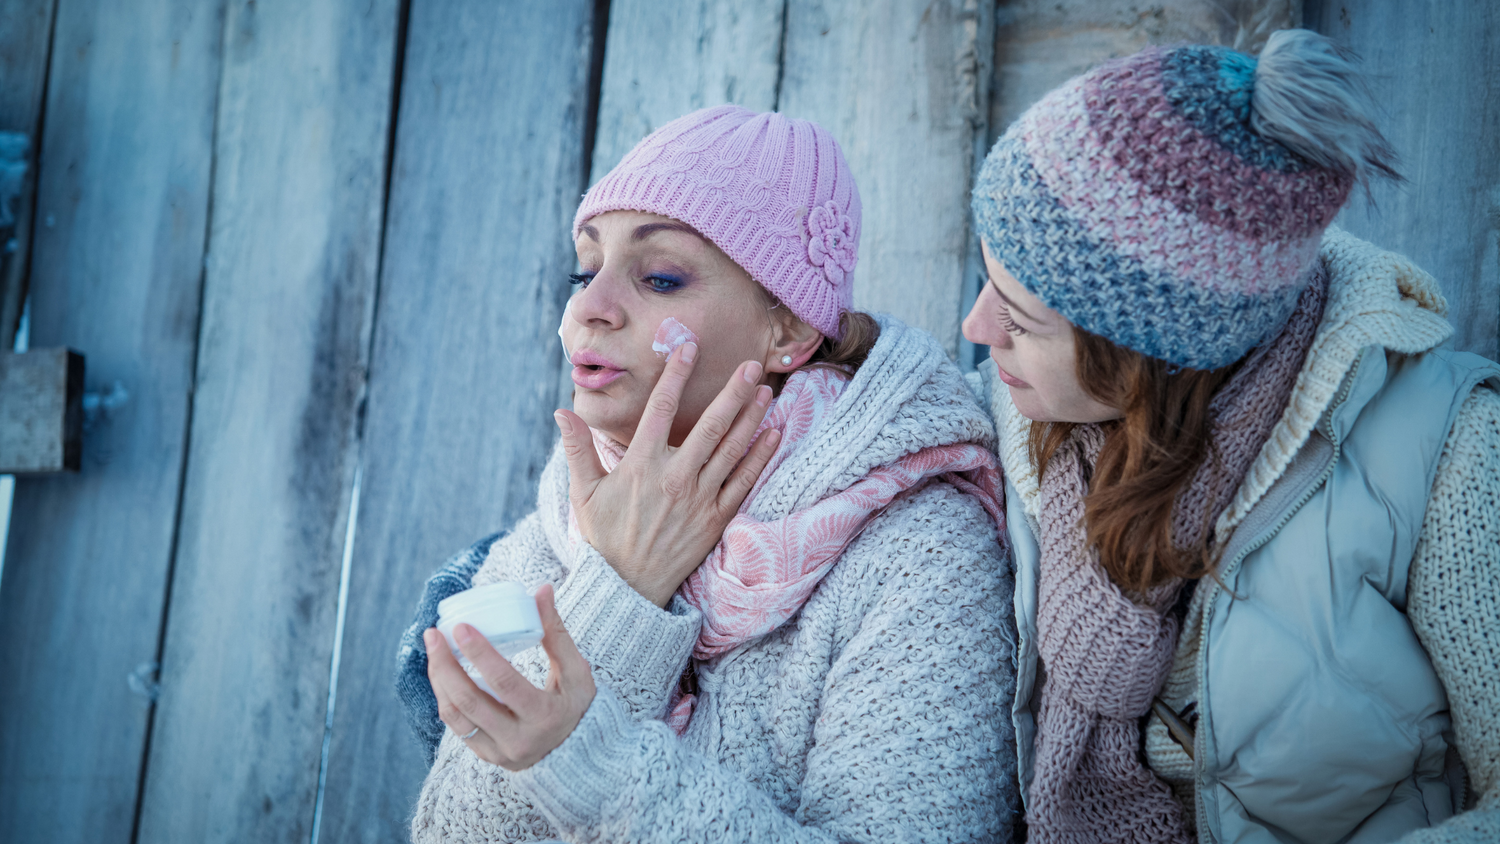 Two women applying moisturizer in winter gear